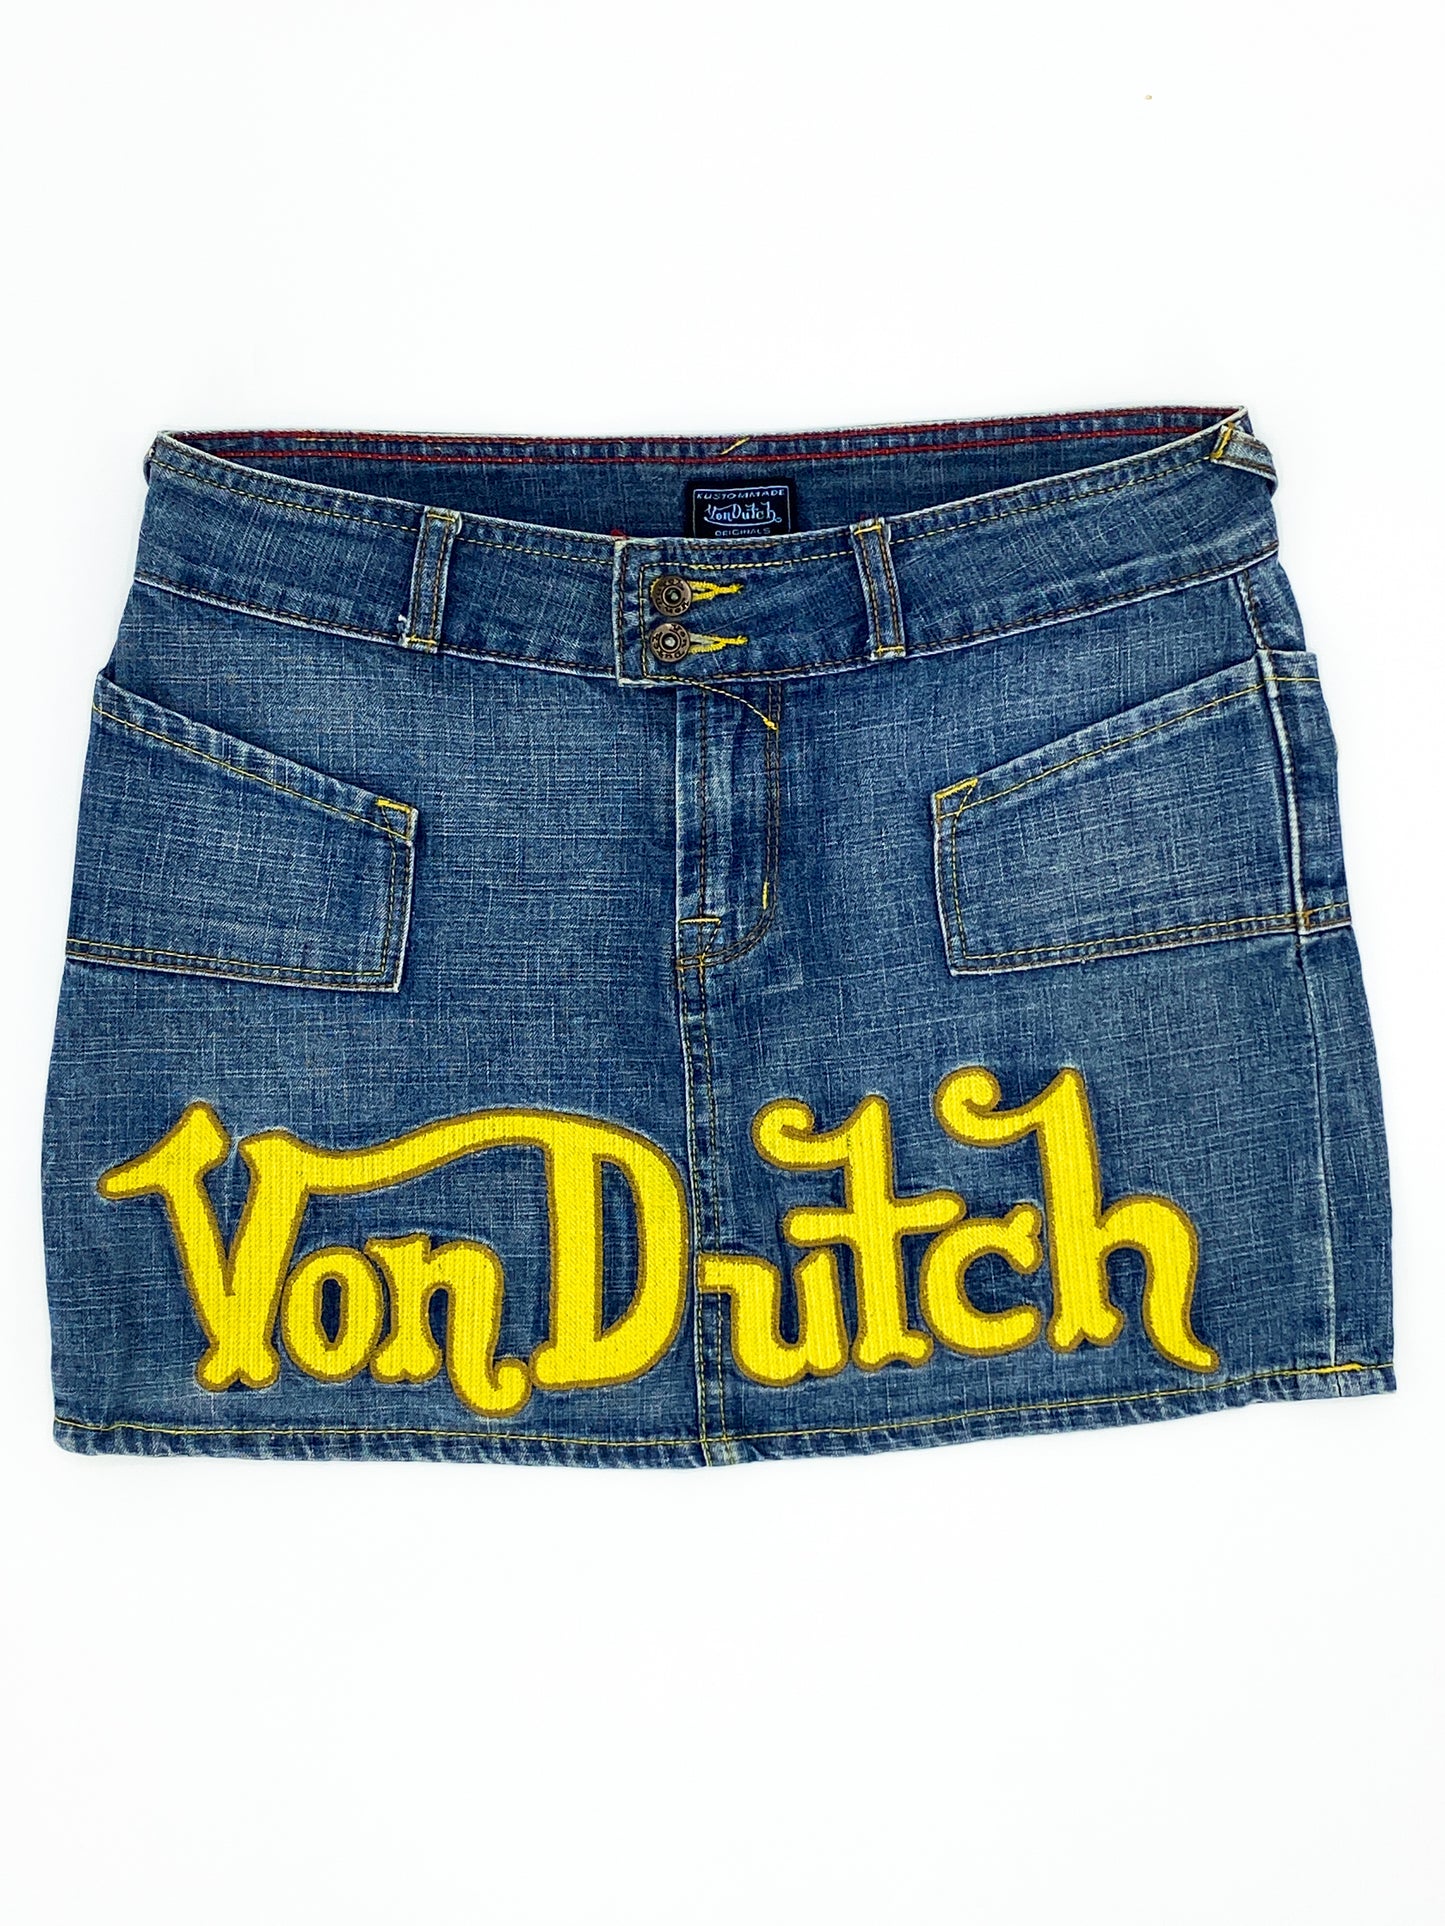 Vintage 00's Von Dutch Skirt - 10